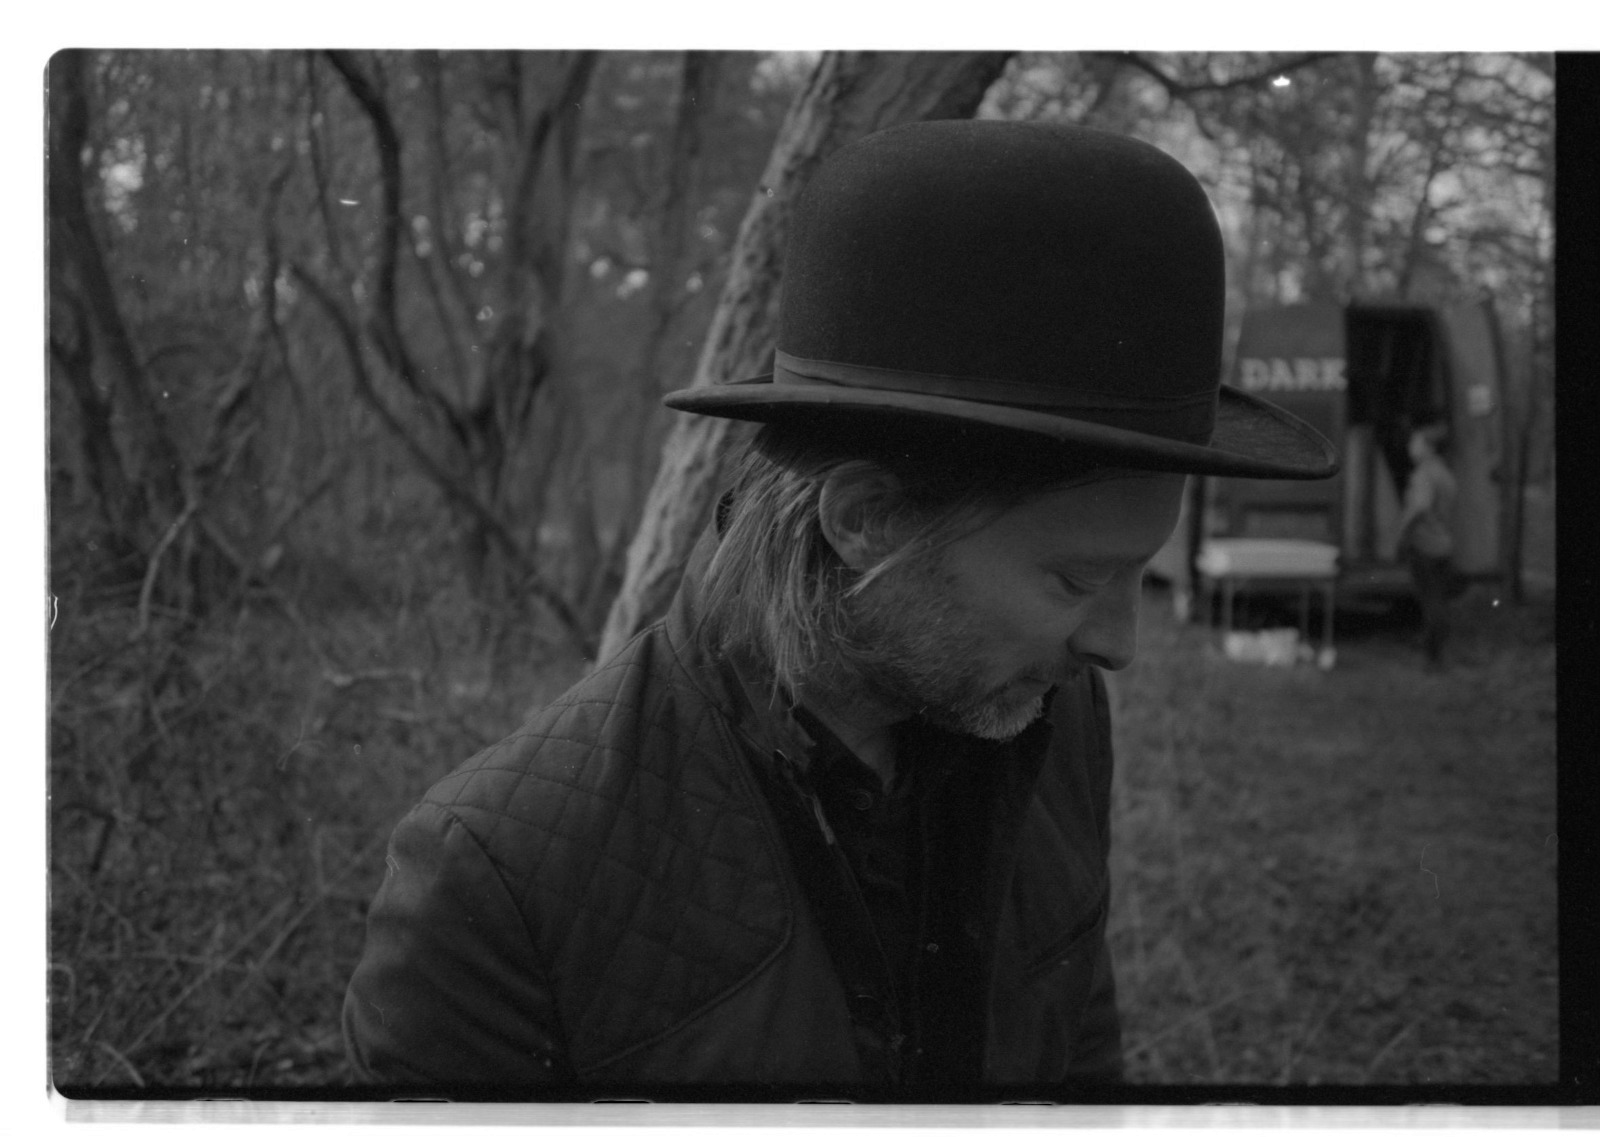 Popnotas – O novo lançamento do&#8230; Radiohead. Cillian Murphy confirmado no filme dos Peaky Blinders. E a nova música do Travis (lembra?)